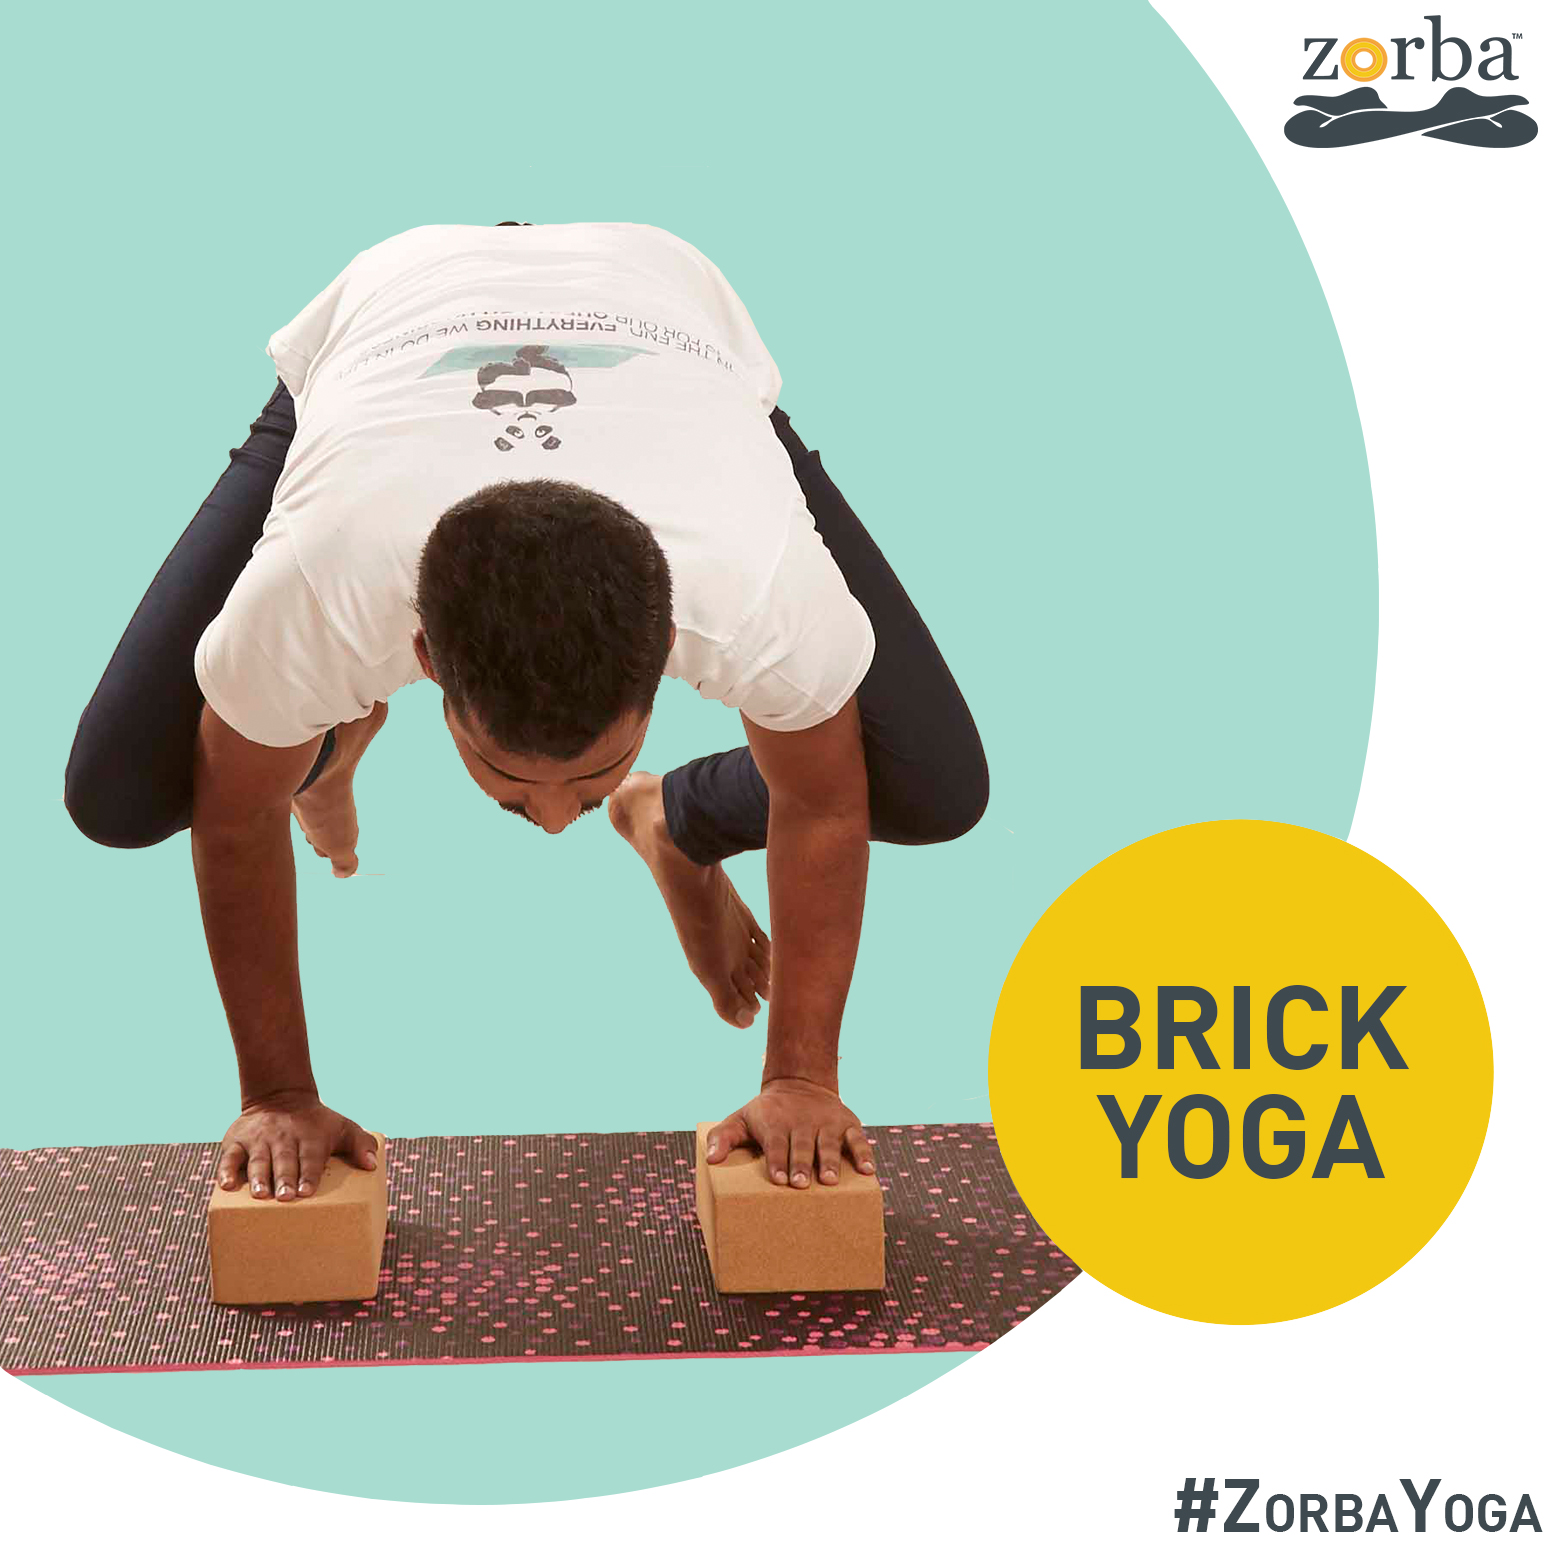 Brick yoga at Zorba